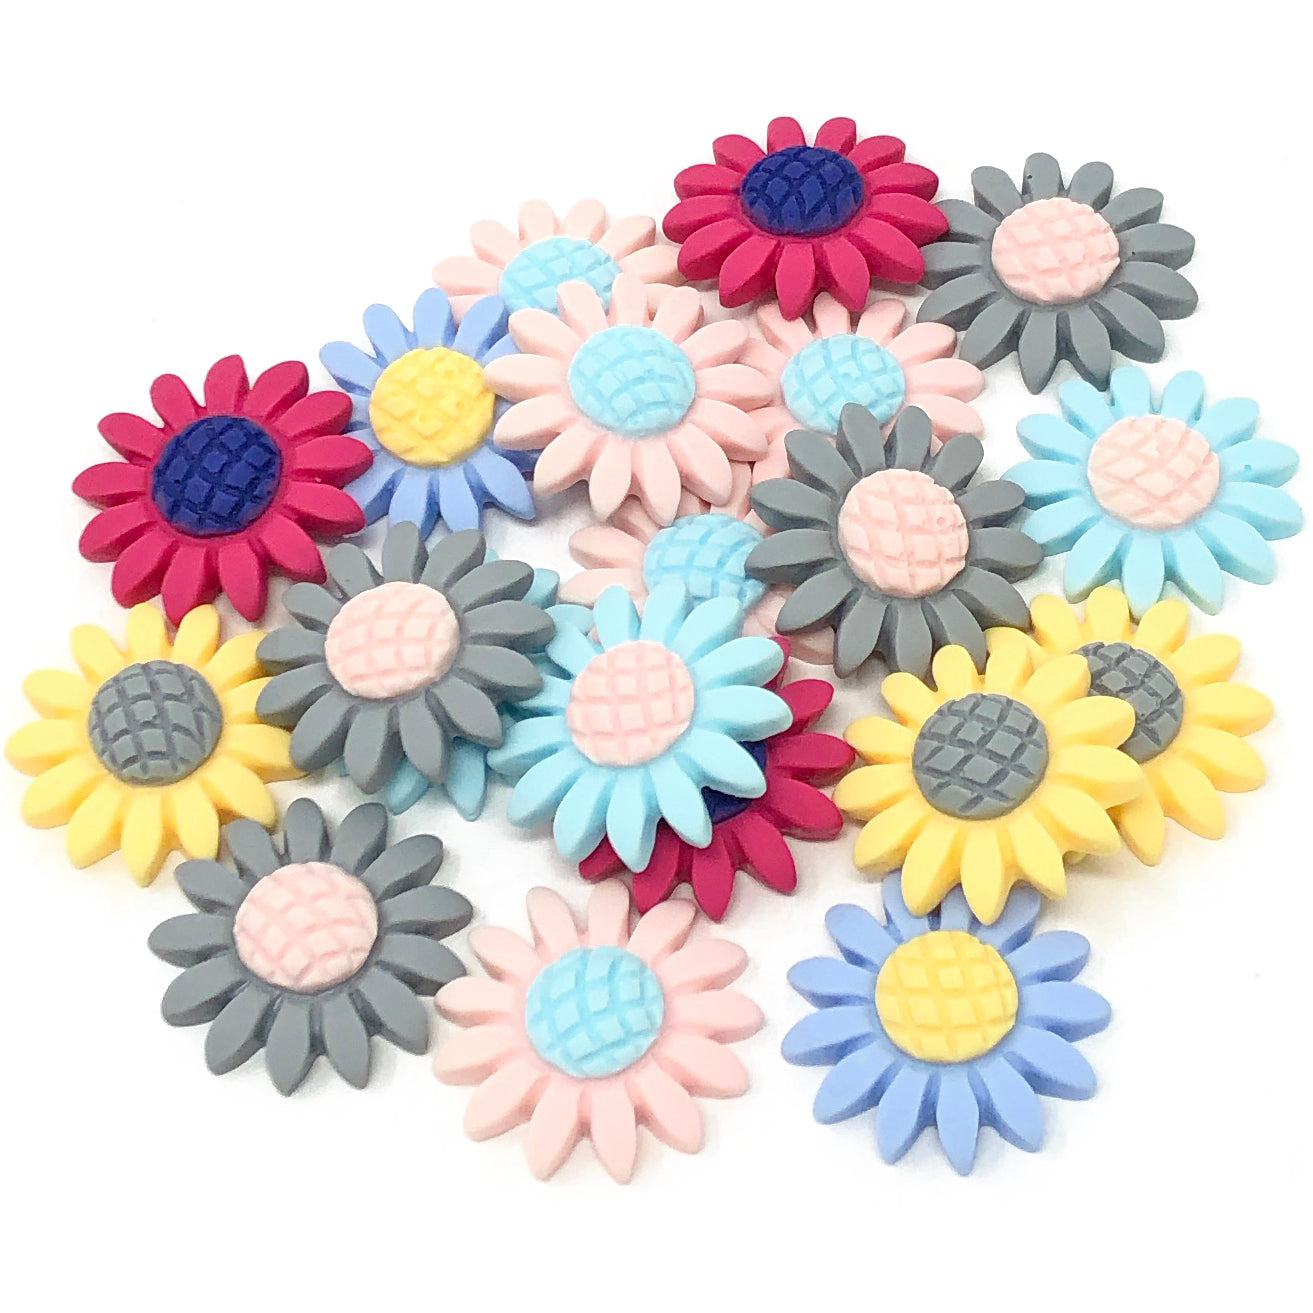 Multicoloured 22mm Soft Feel Sunflower Flatbacks - Pack of 20